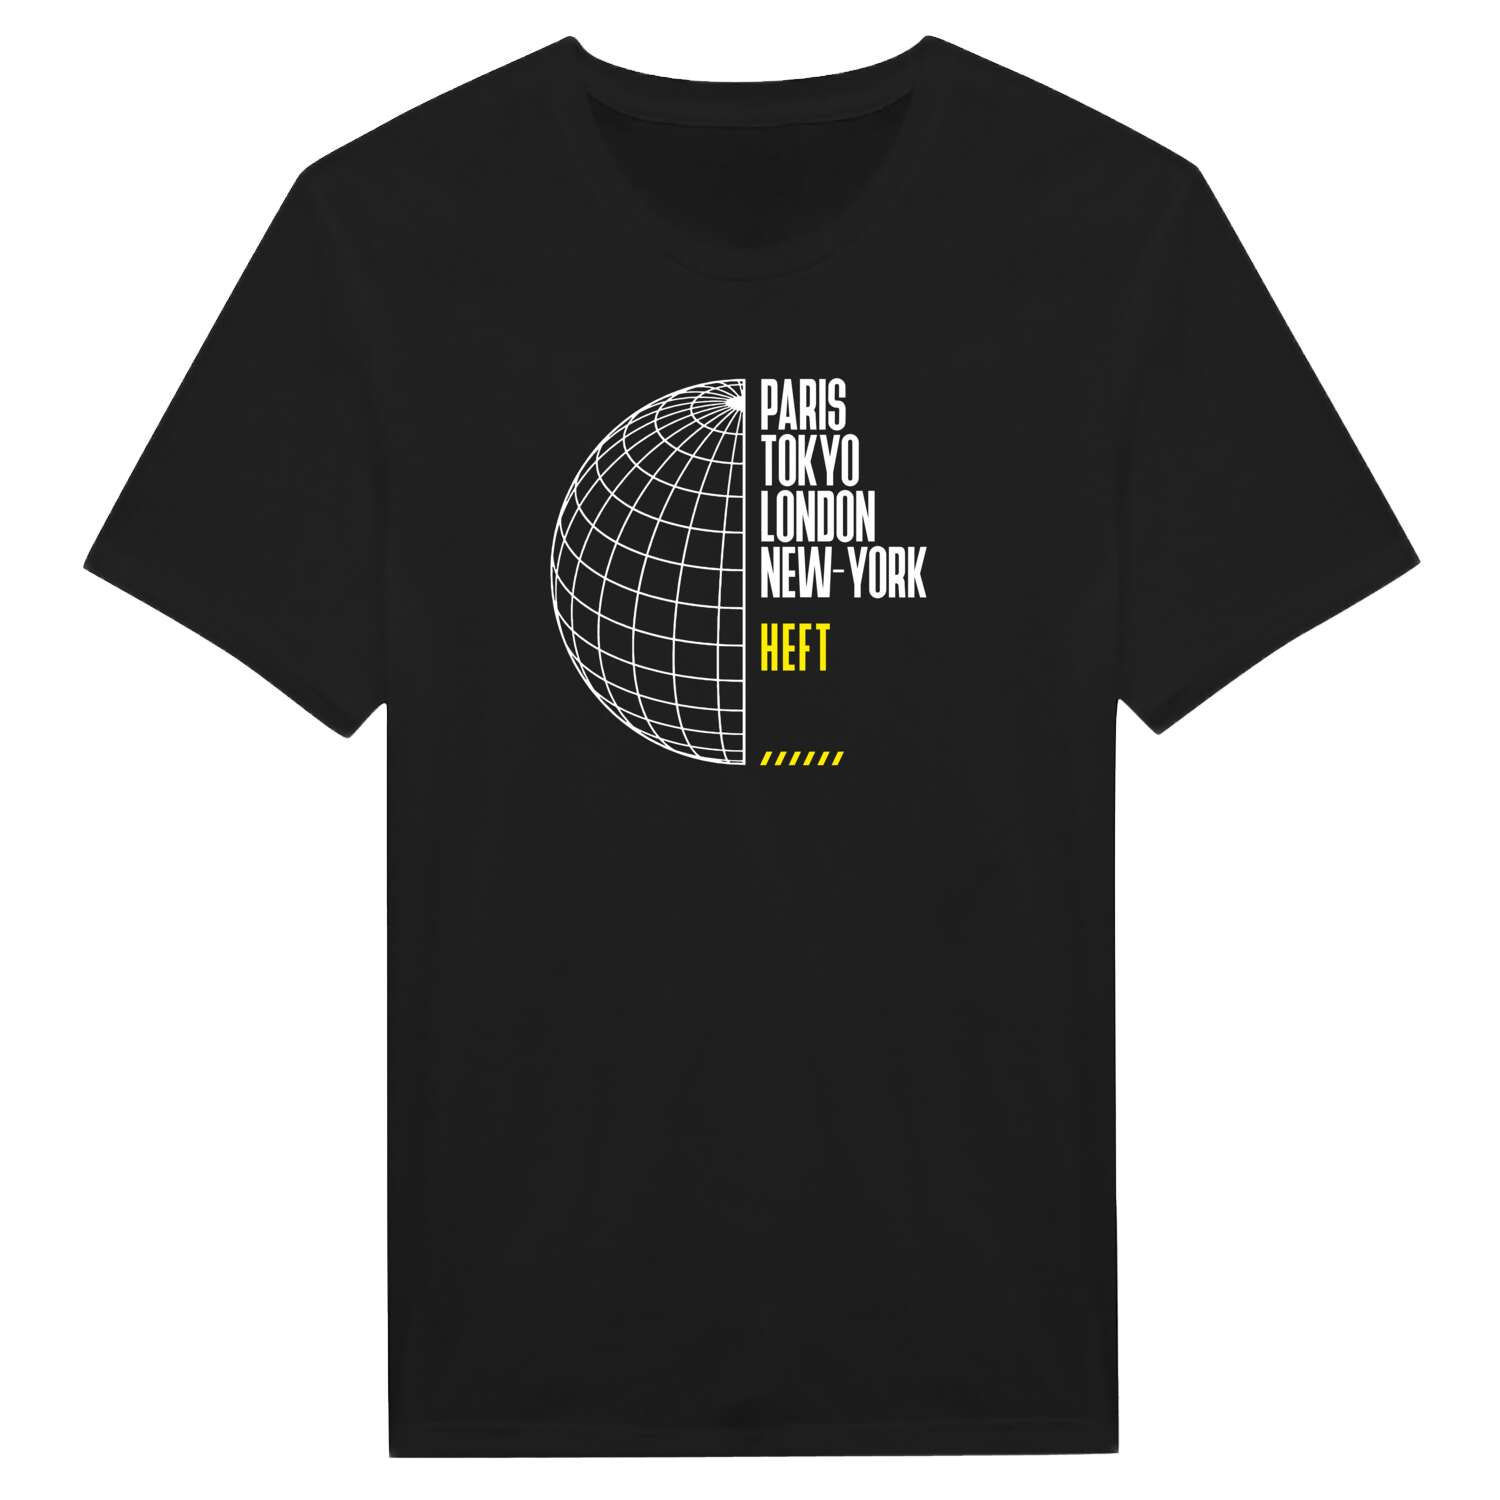 Heft T-Shirt »Paris Tokyo London«